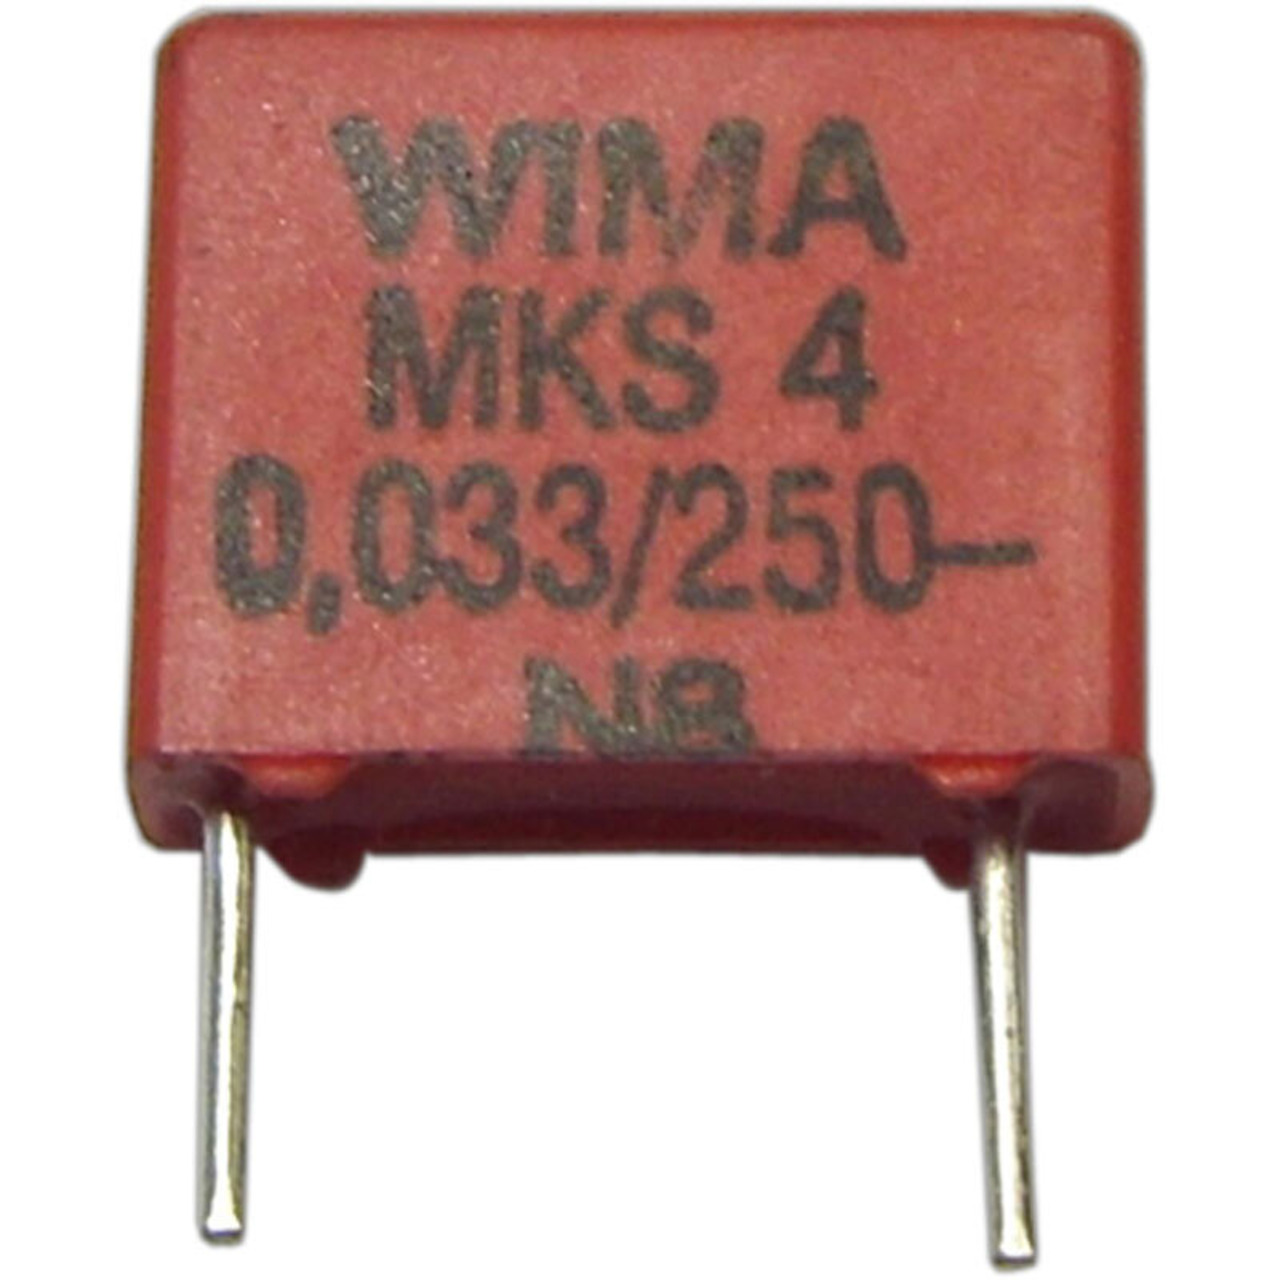 Kondensator 33 nF- 250 V unter Komponenten